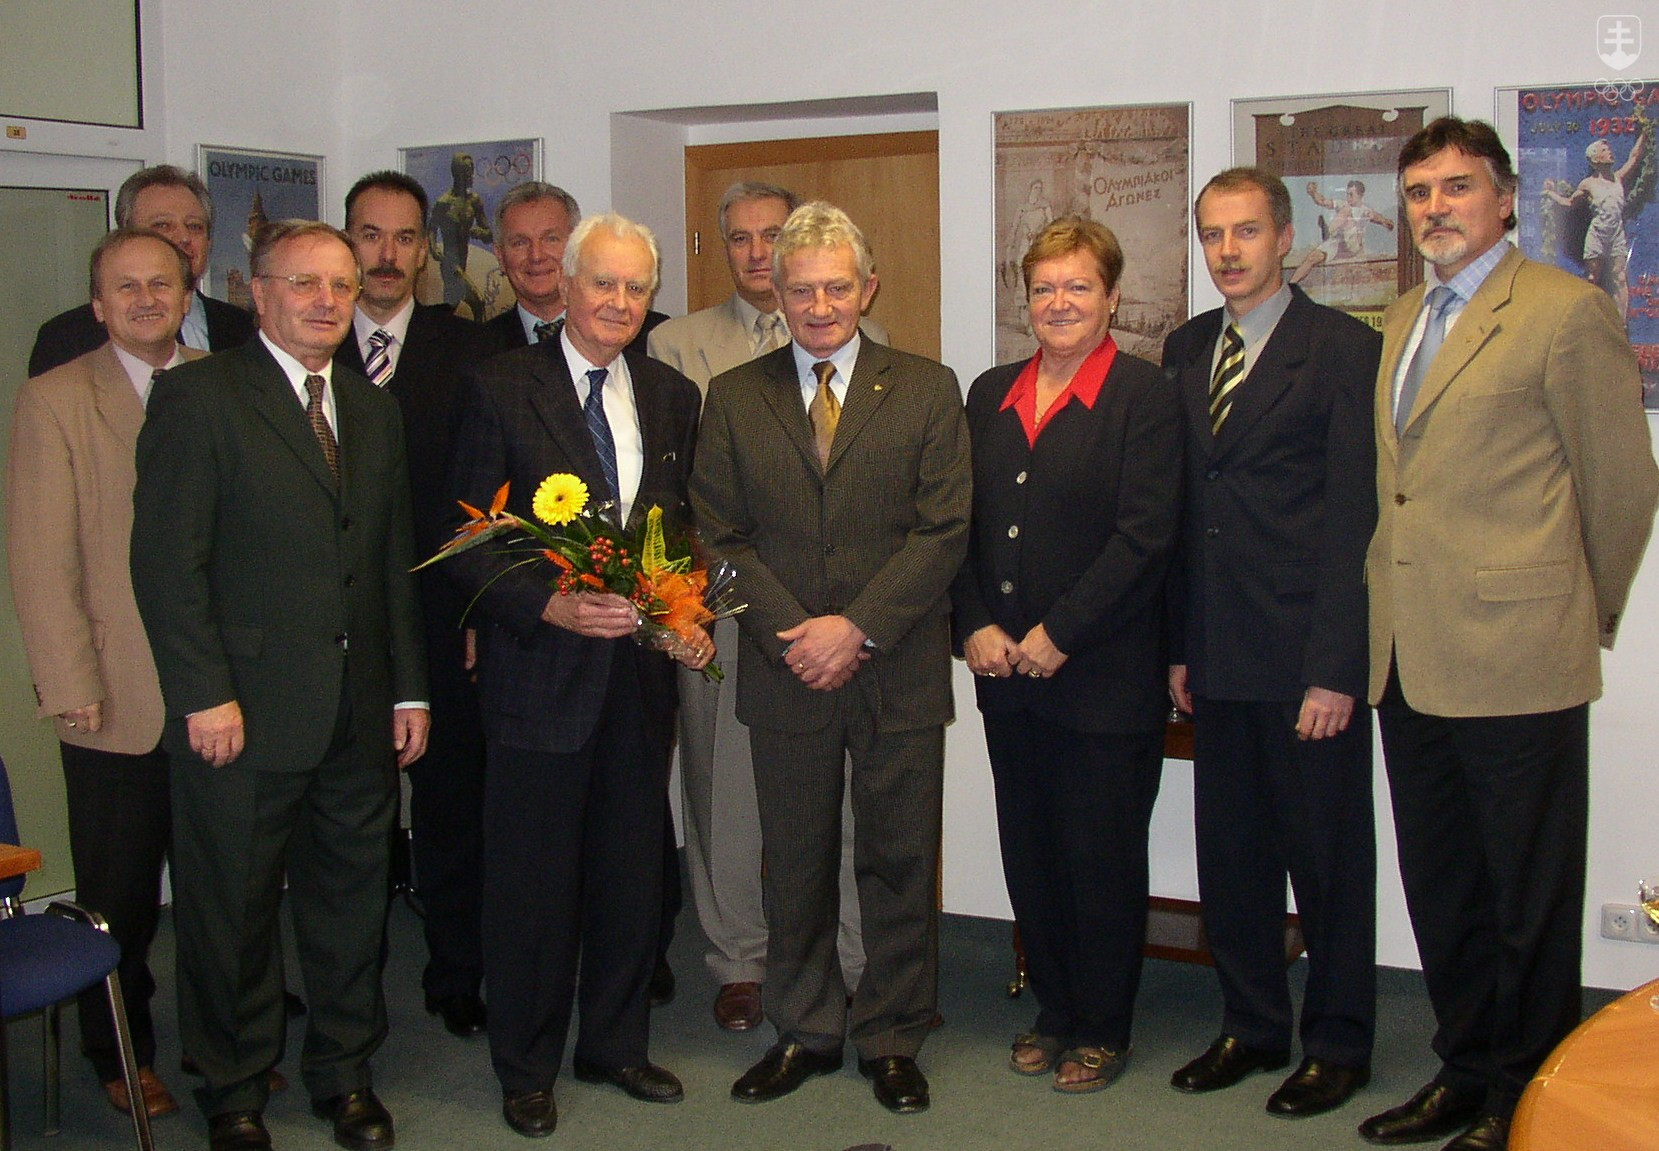 Vladimír Černušák v obklopení niekdajších členov výkonného výboru SOV po zasadnutí exekutívy, na ktorom mu blahoželali k životnému jubileu.